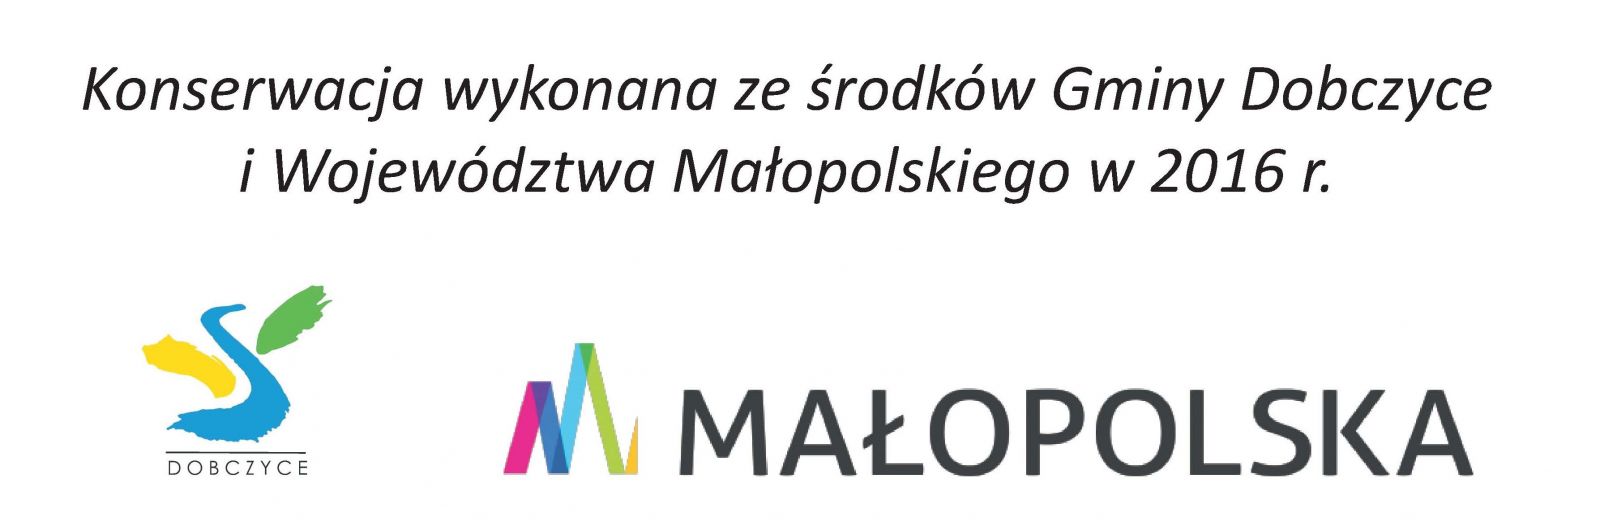 logo gminy Dobczyce i Małopolski